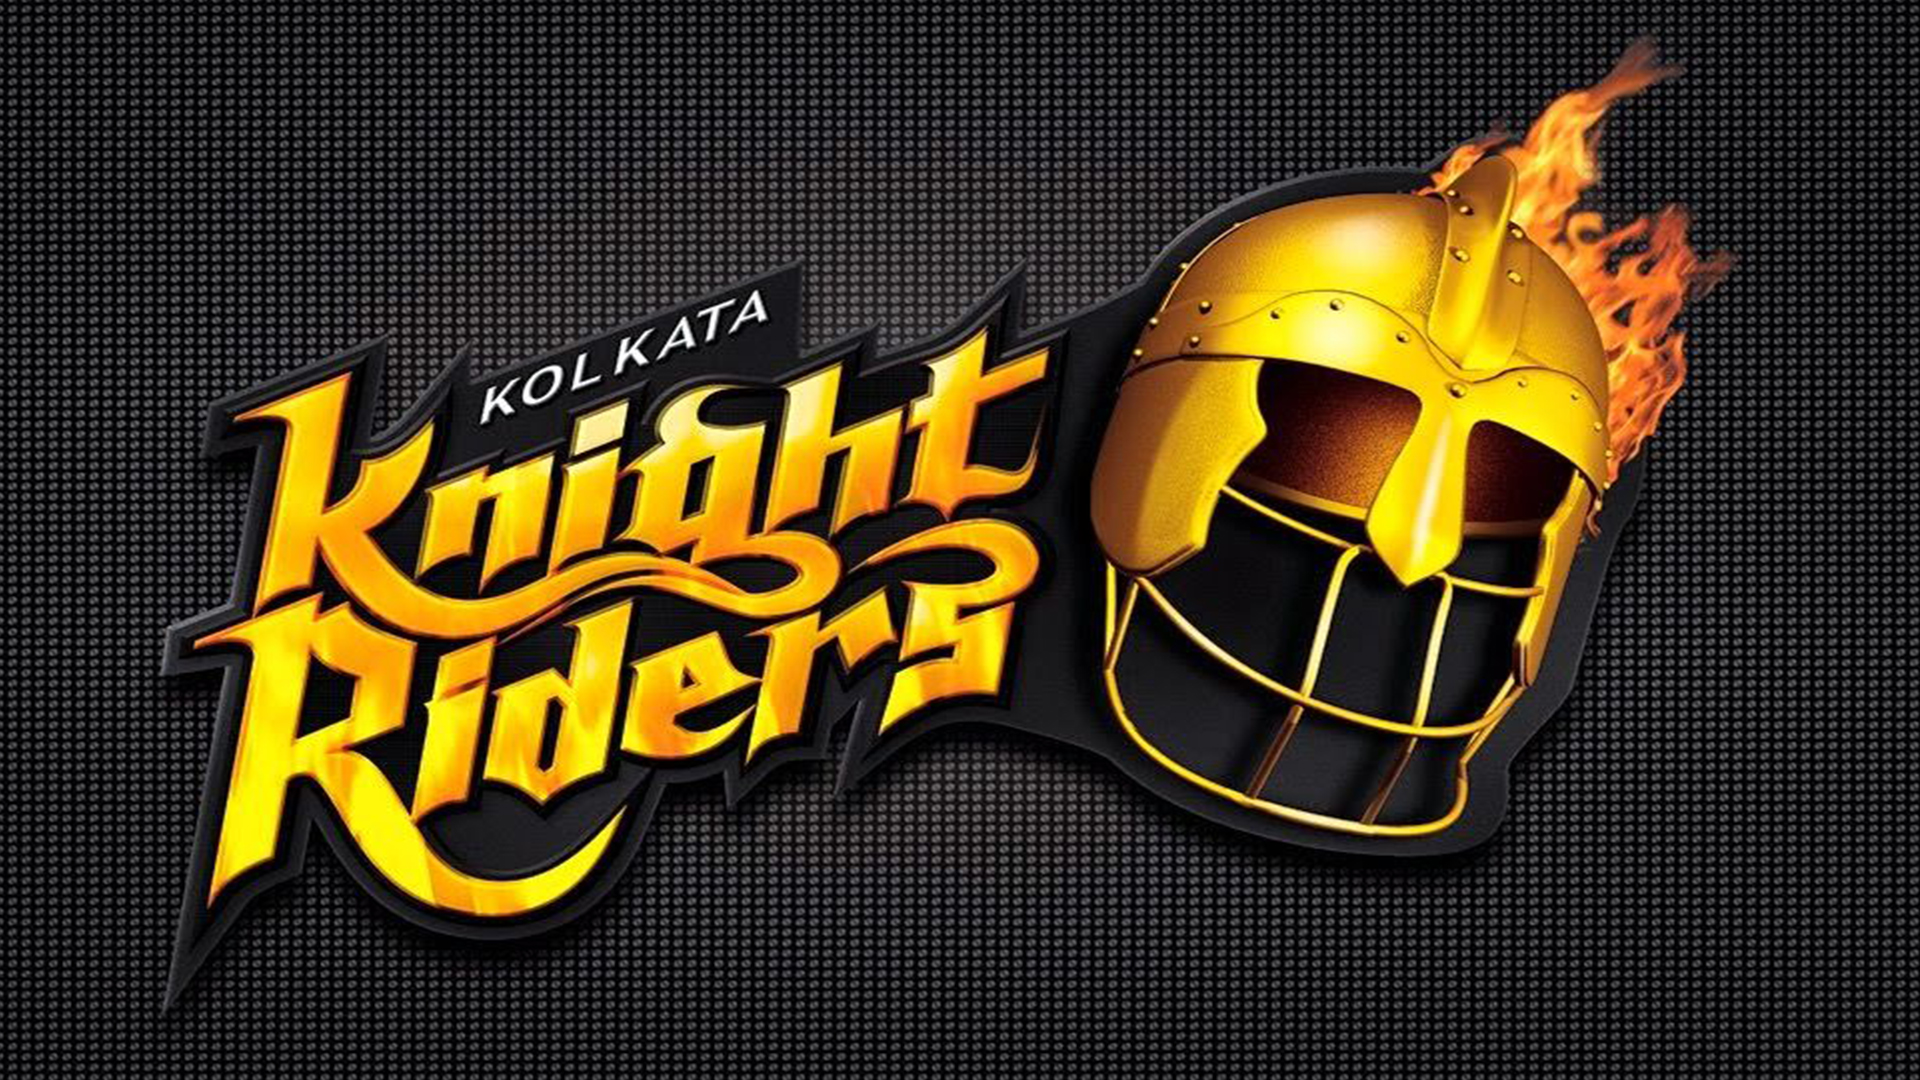 kolkata knight riders wallpaper